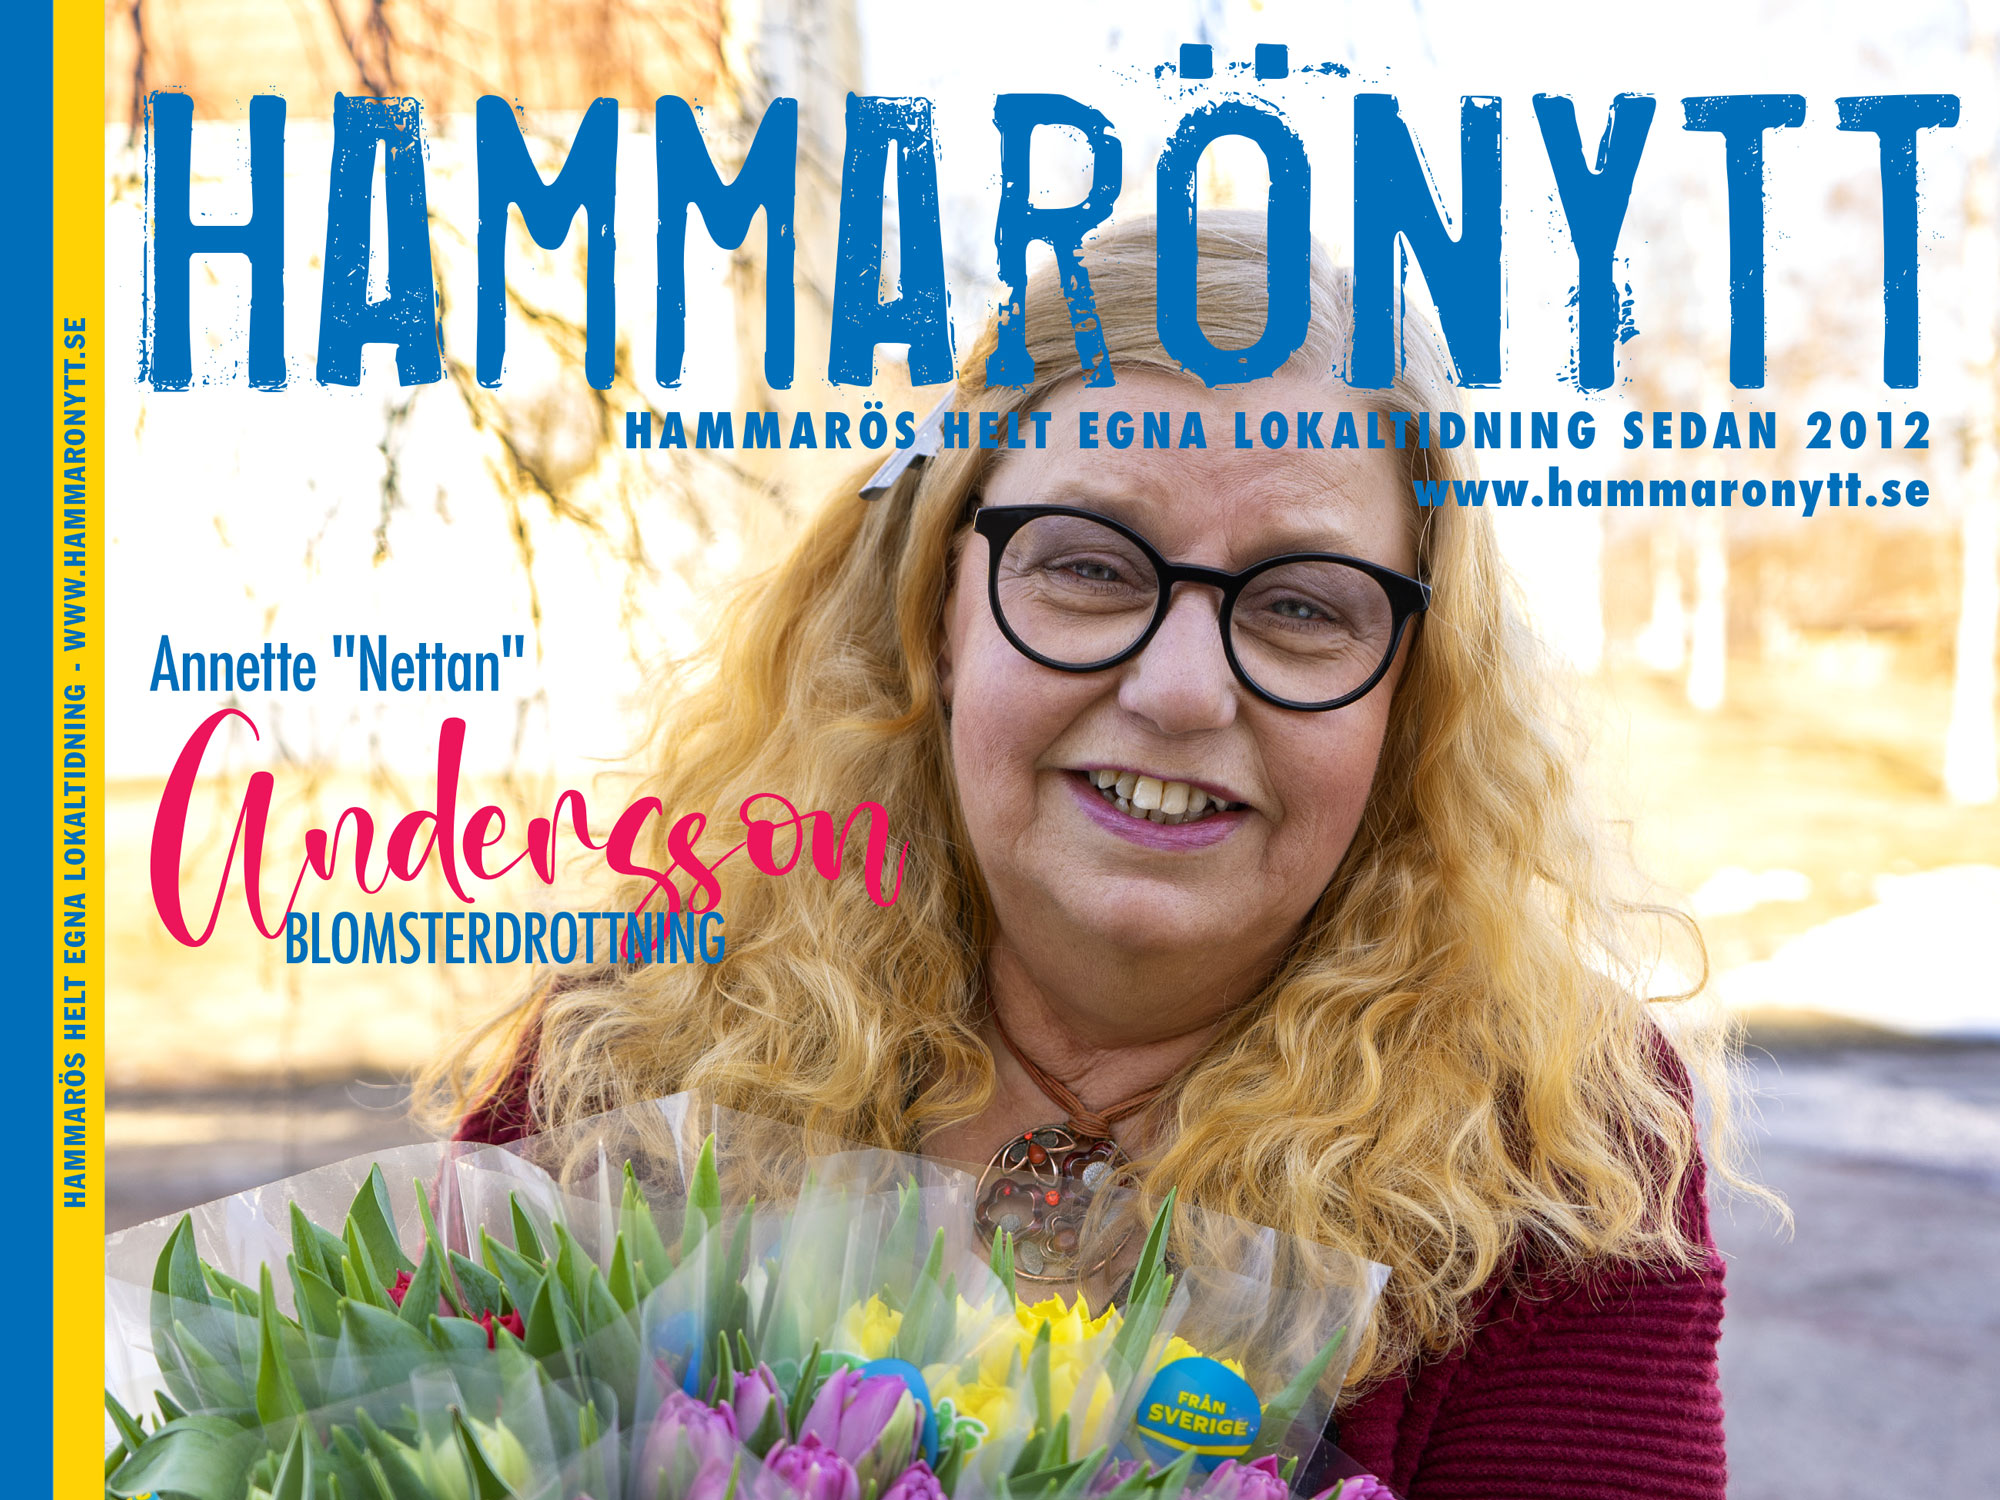 Skoghalls egen blomsterdrottning är huvudperson i marsnumret av HammaröNytt.